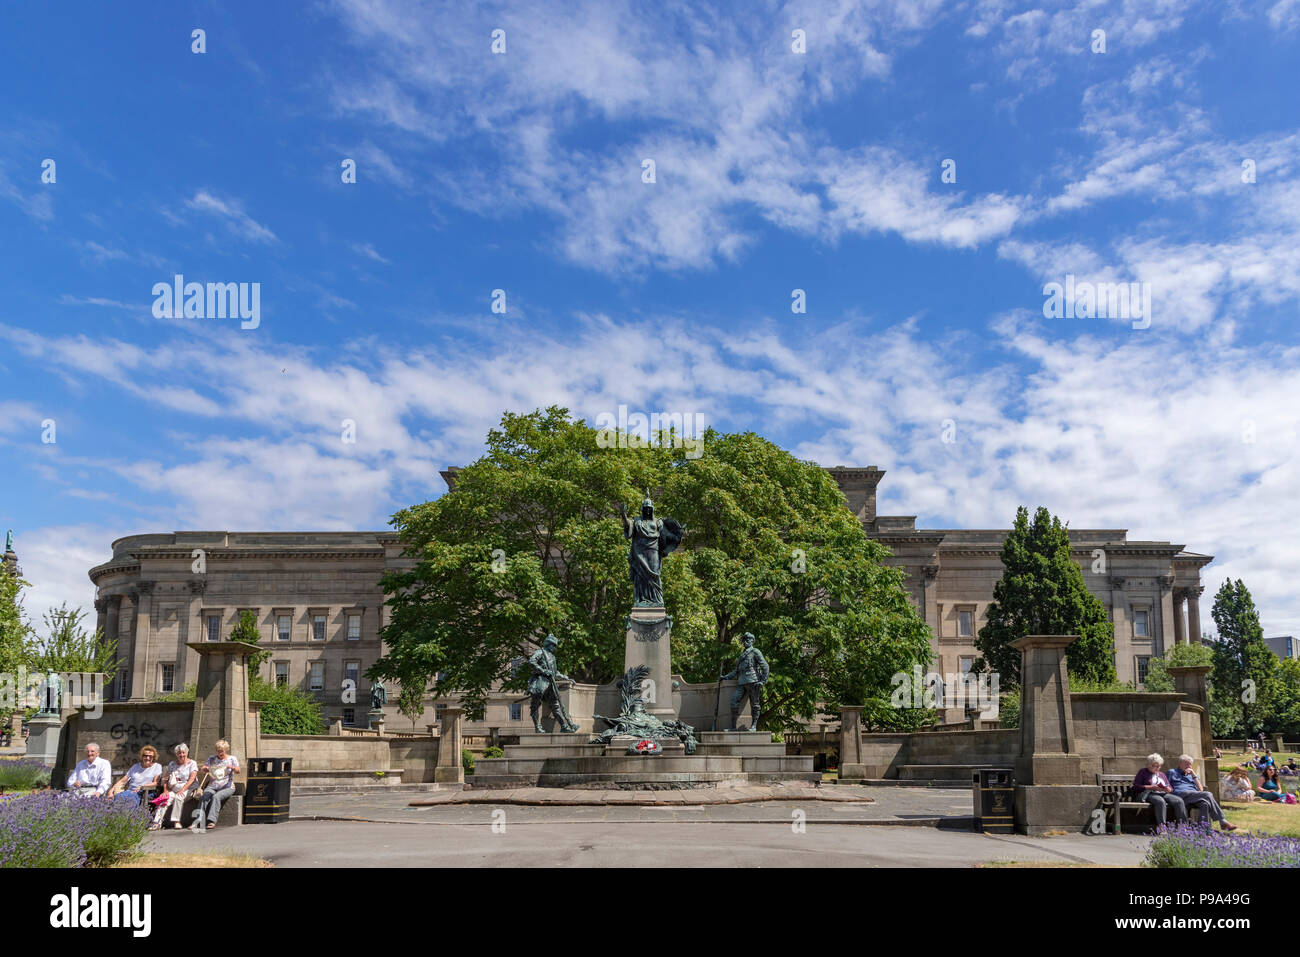 Die St. Johns Gärten in Liverpool von St Georges Hall das Denkmal erinnert an den Service von des Königs Regiment in der Südafrikanischen Krieg. Stockfoto